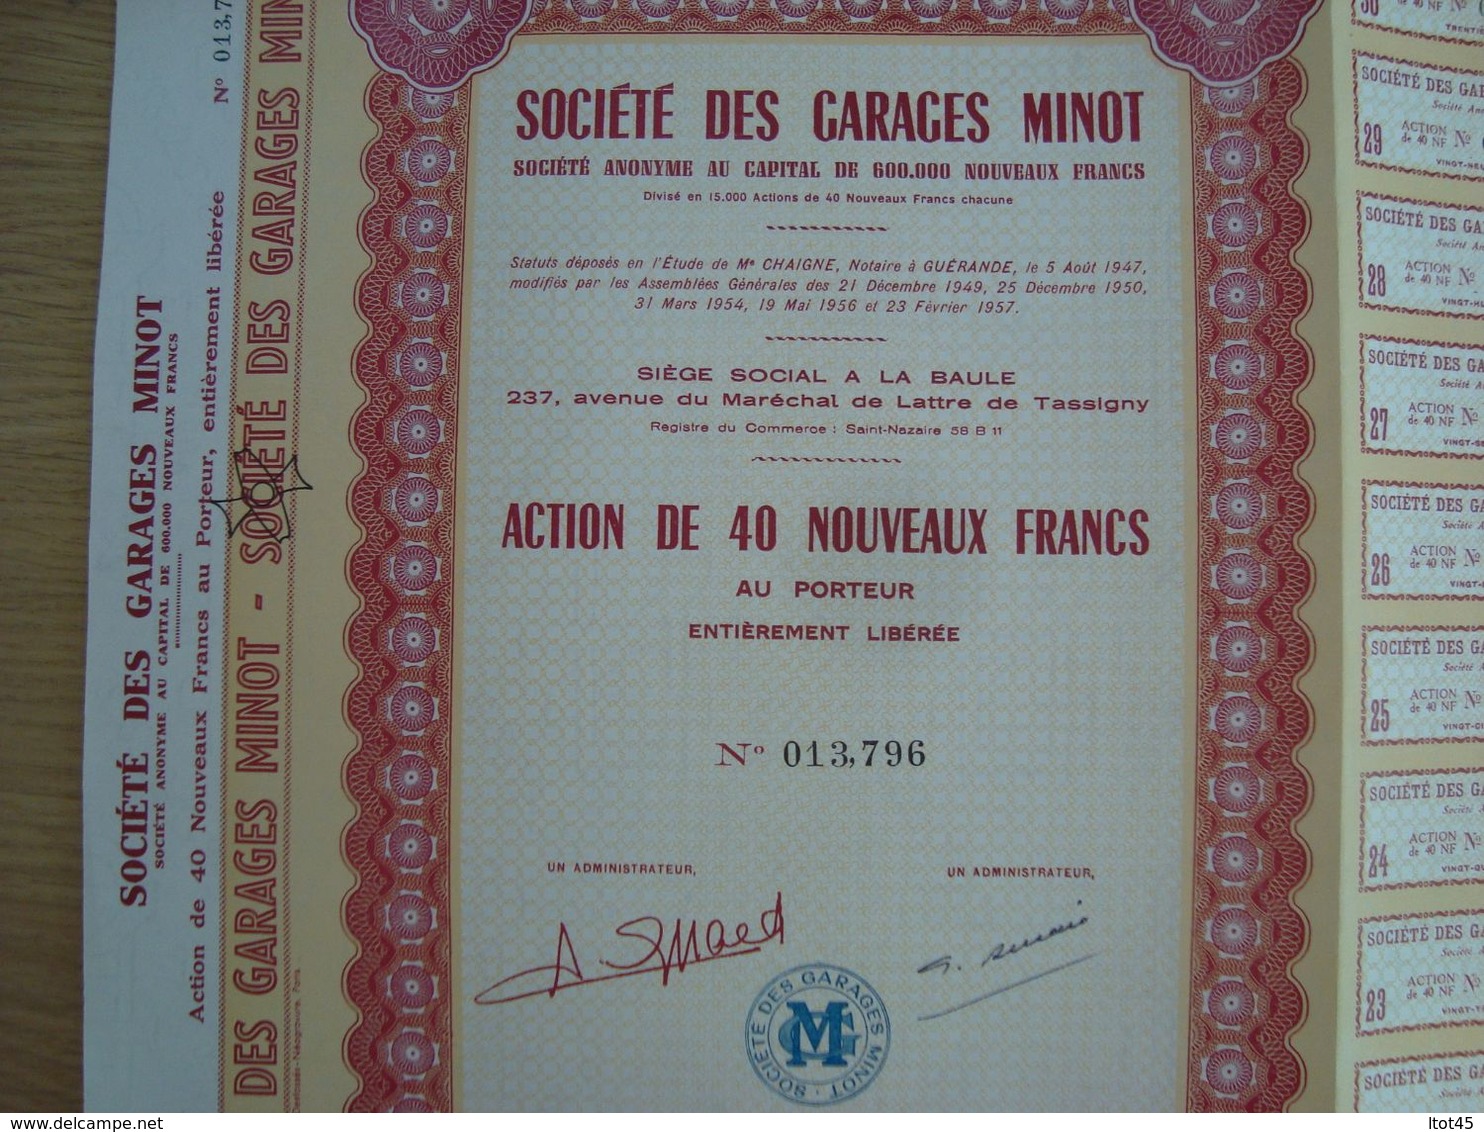 ACTION DE 40 NOUVEAUX FRANCS SOCIETE DES GARAGES MINOT 1960 - Auto's